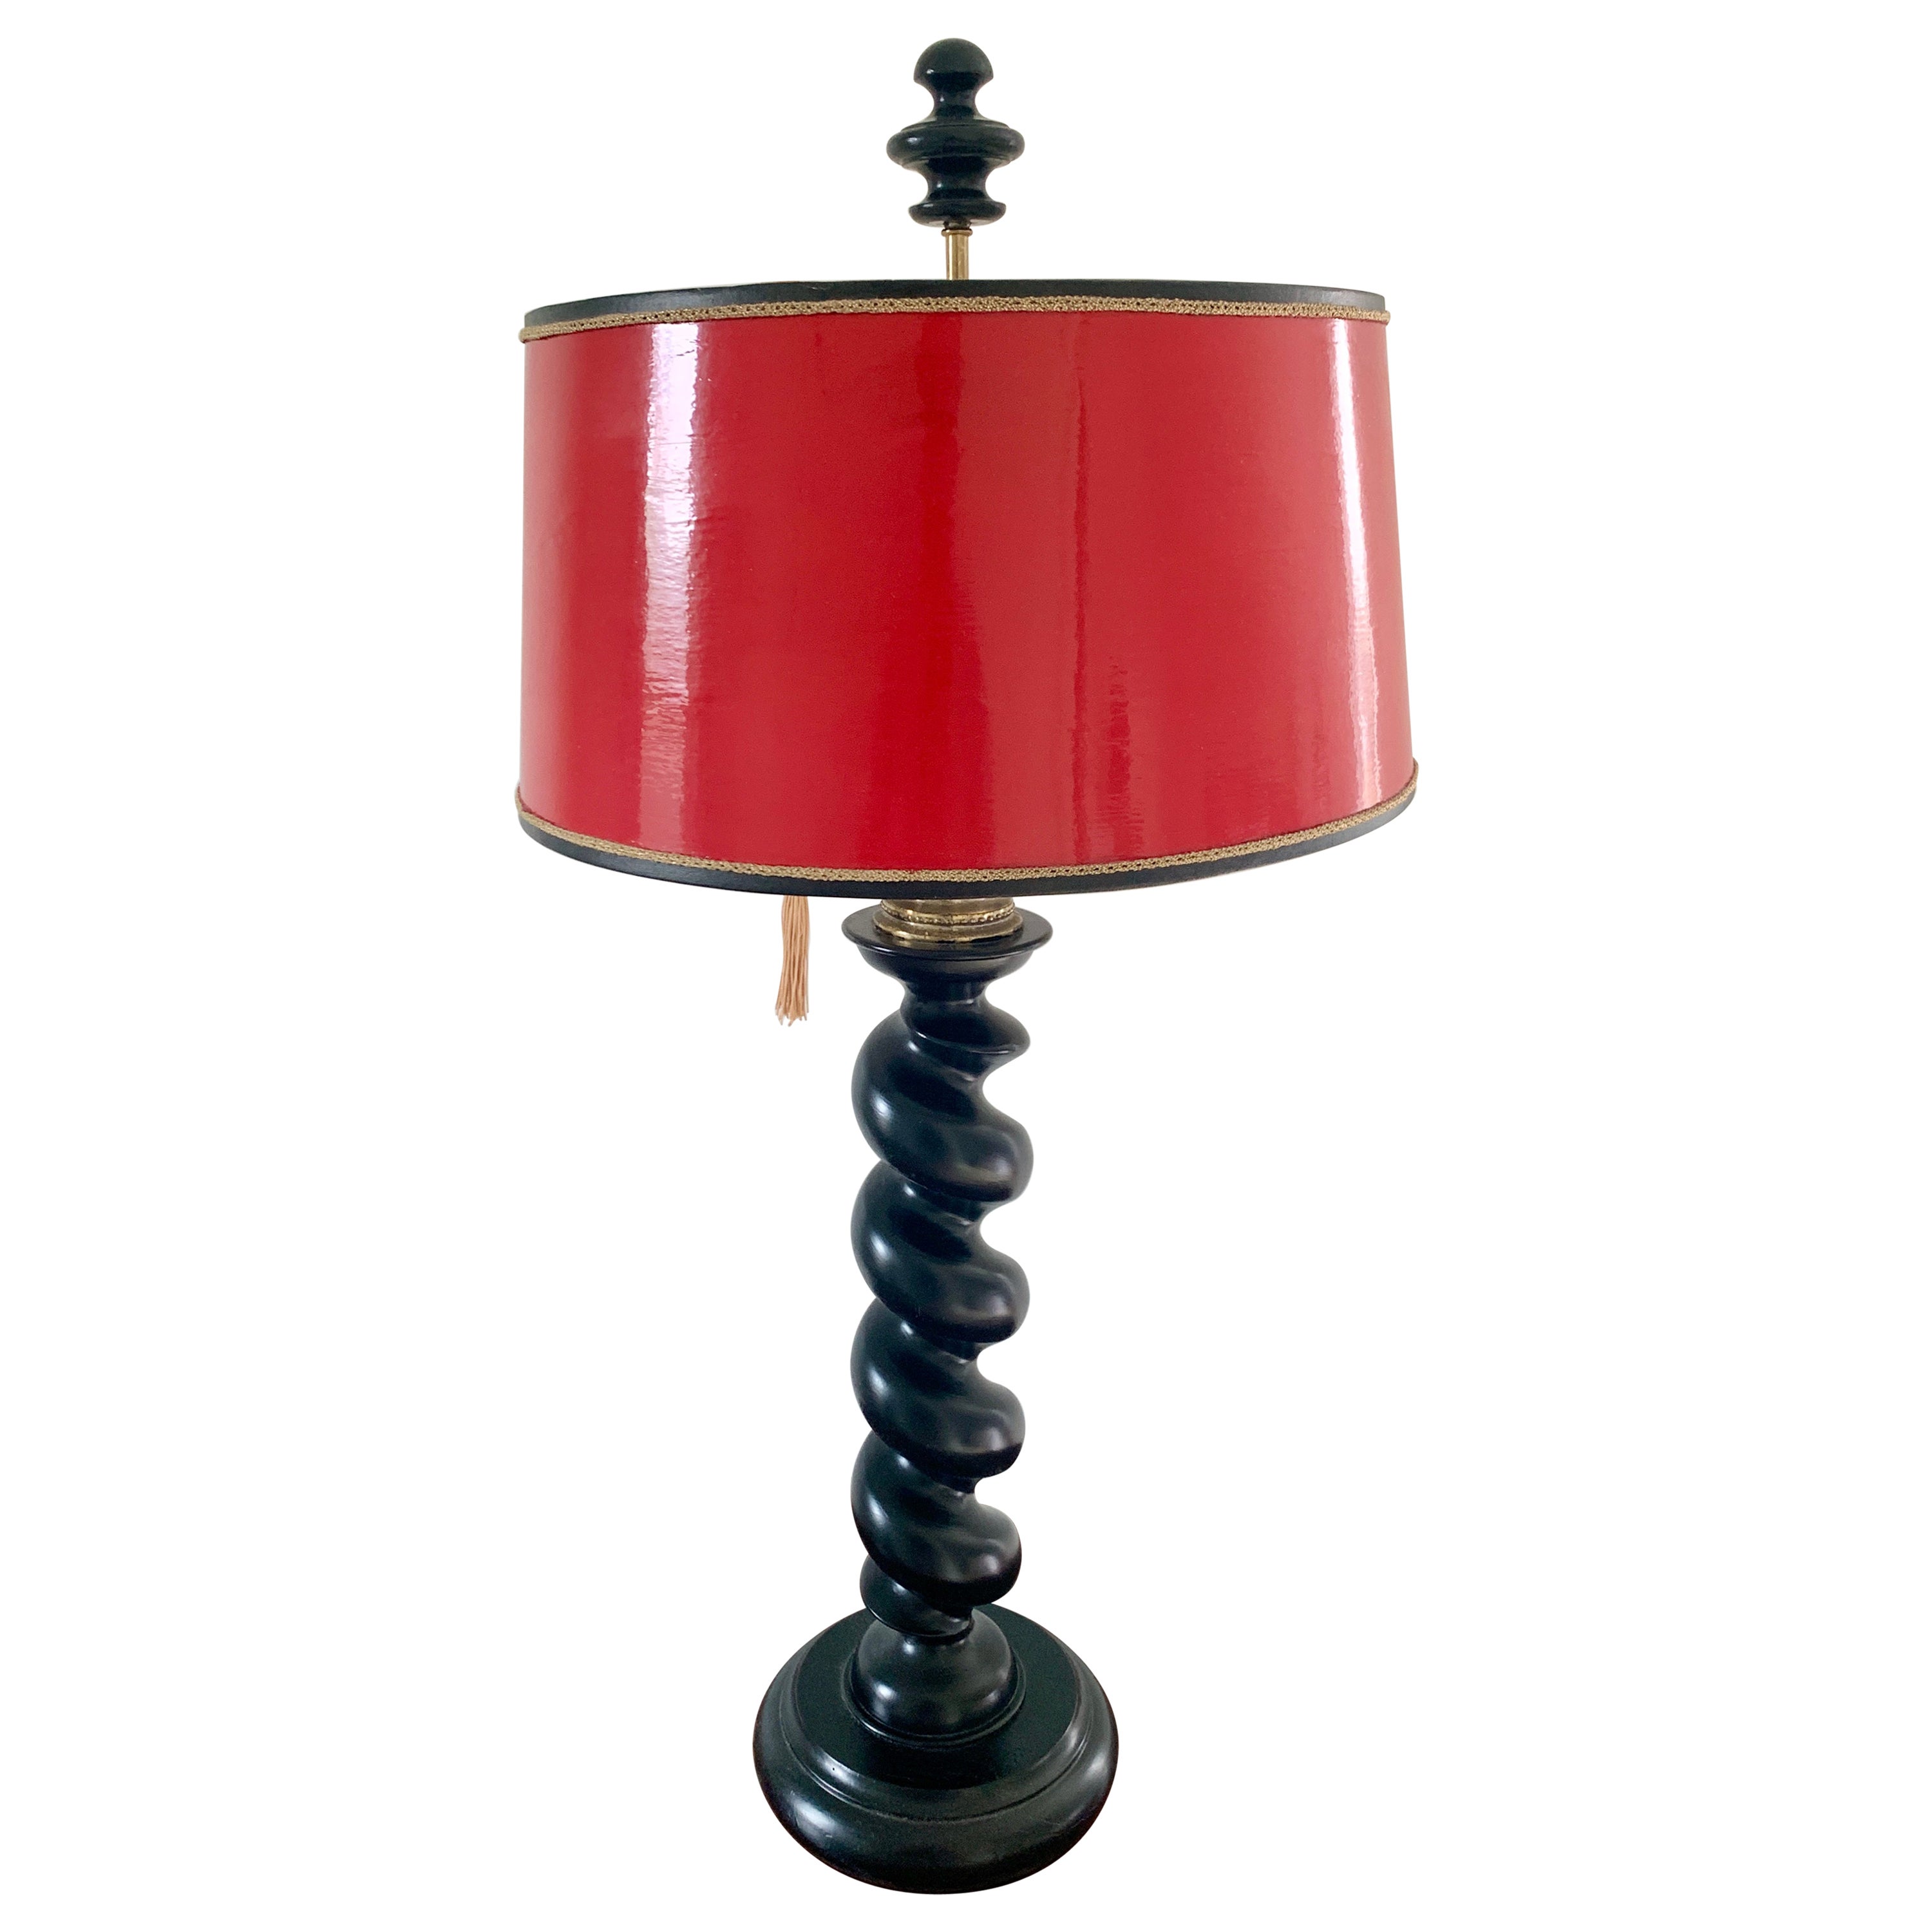 Barley Twist-Tischlampe aus ebonisierter Eiche mit rot lackiertem Schirm